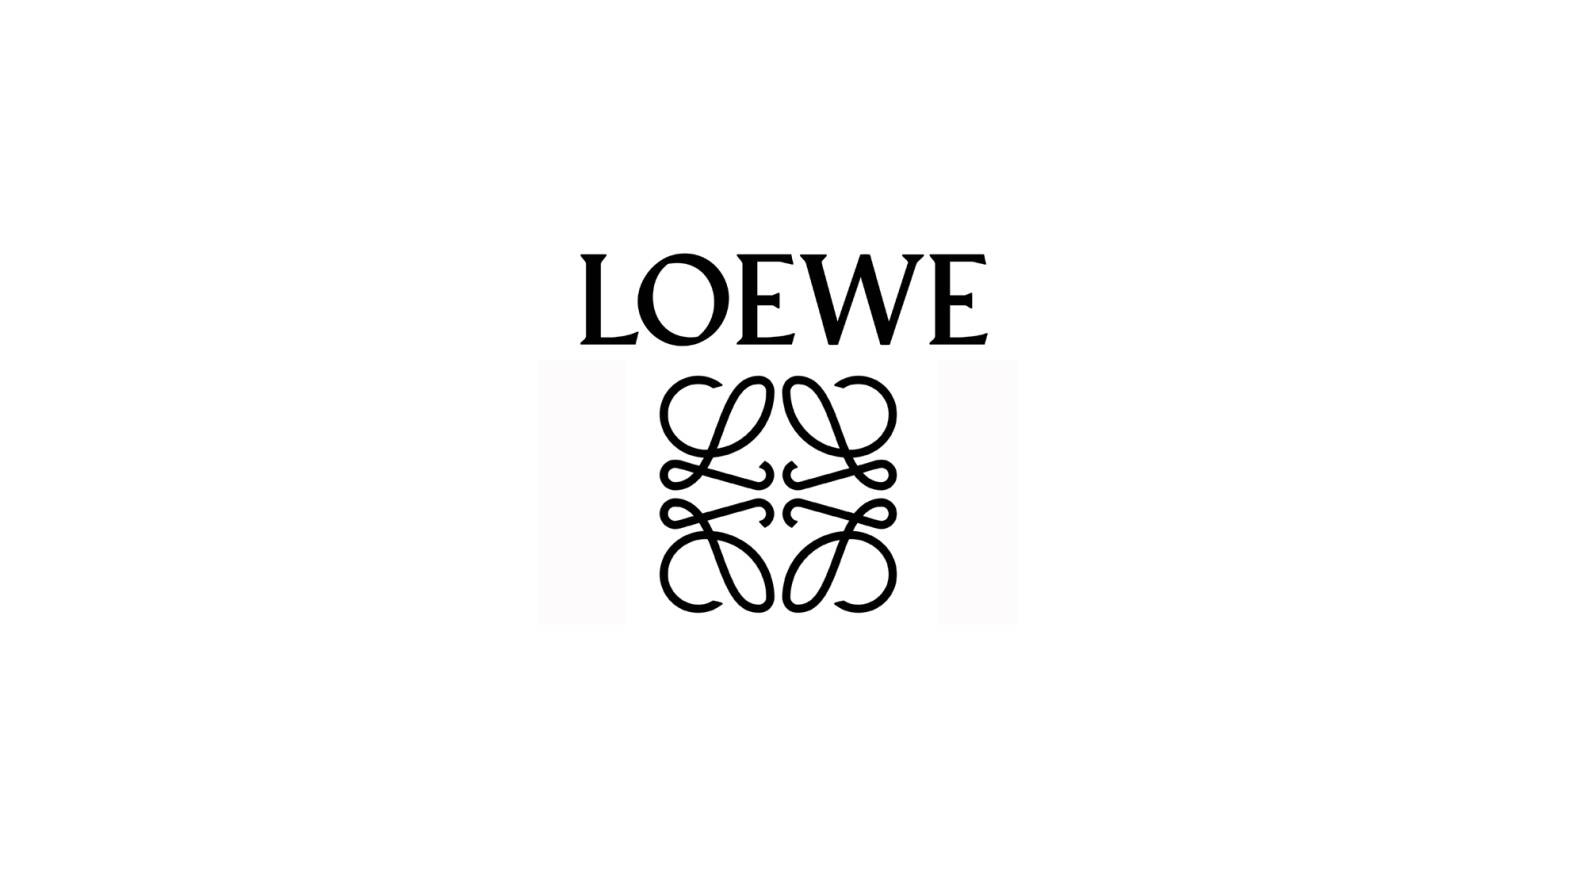 Amazon.co.uk: We. by Loewe.